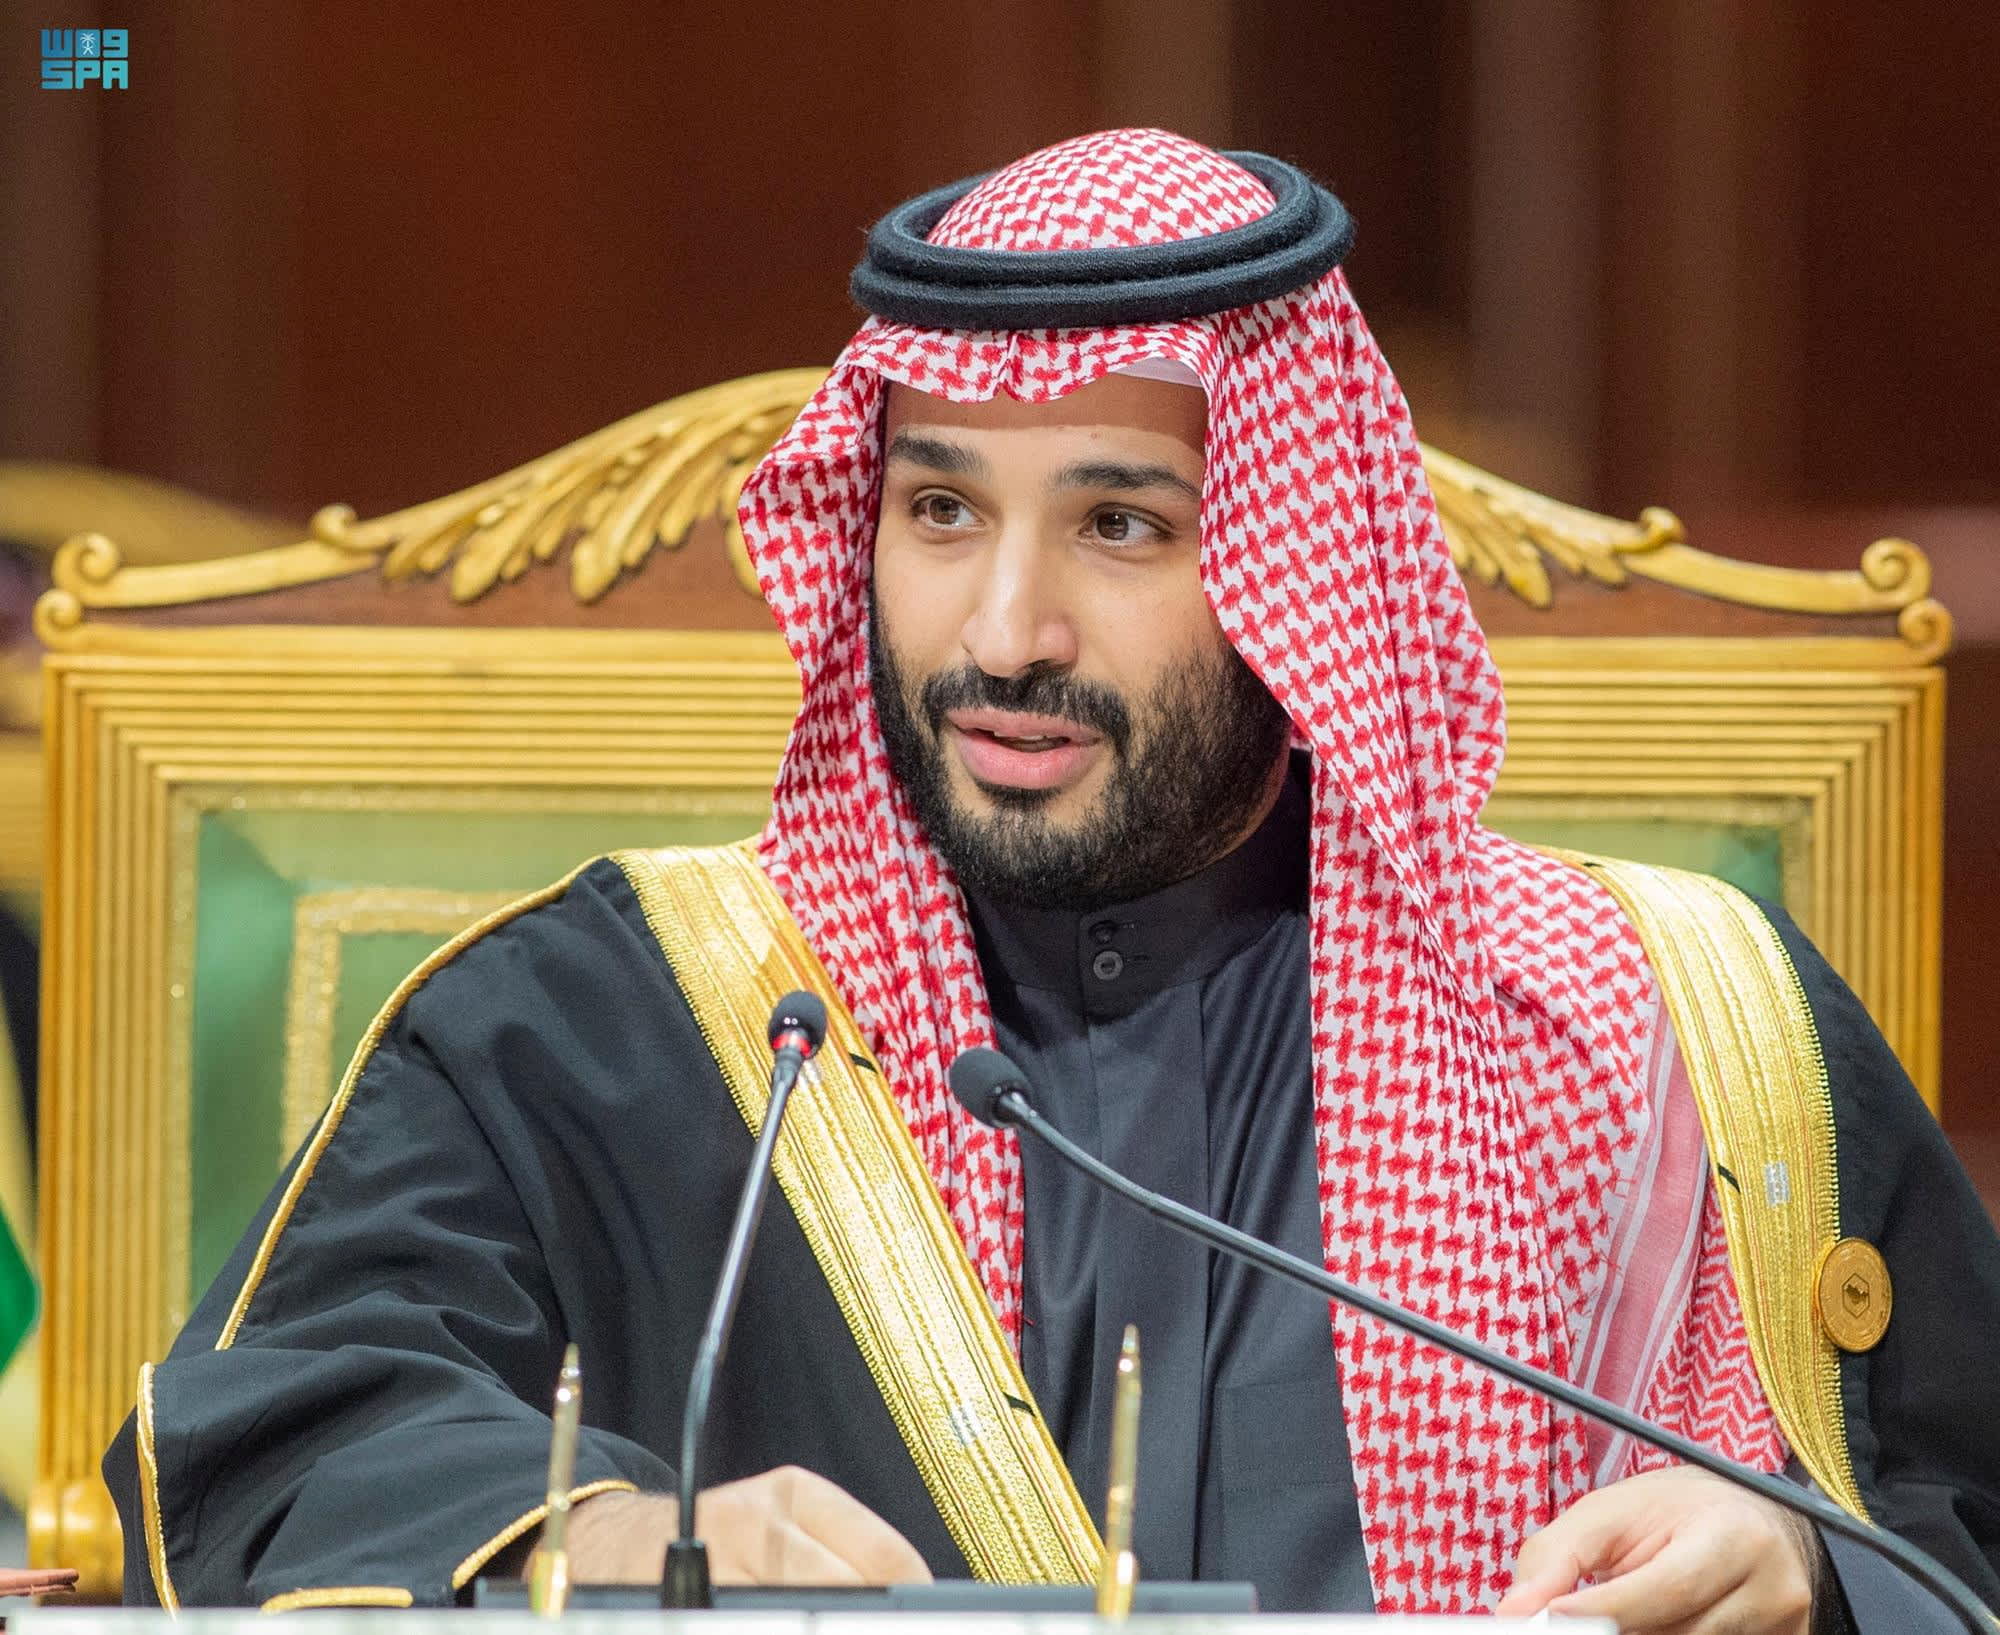 Le Canada et l’Arabie saoudite renouent leurs relations diplomatiques après un différend sur les droits humains en 2018